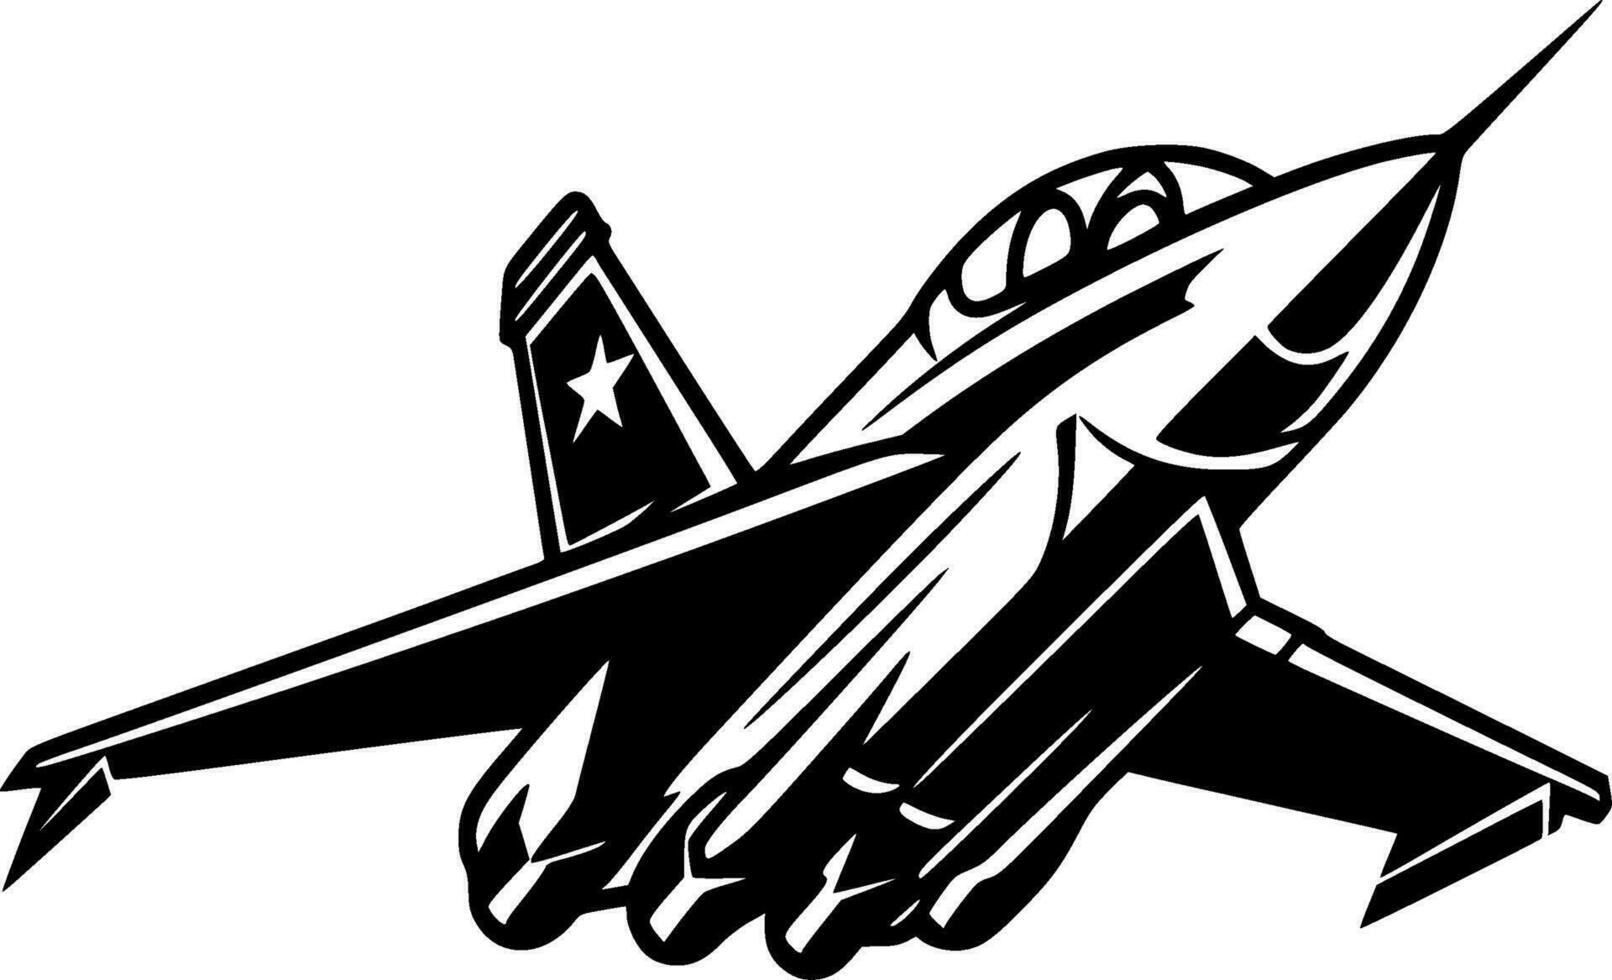 combattant jet - haute qualité vecteur logo - vecteur illustration idéal pour T-shirt graphique